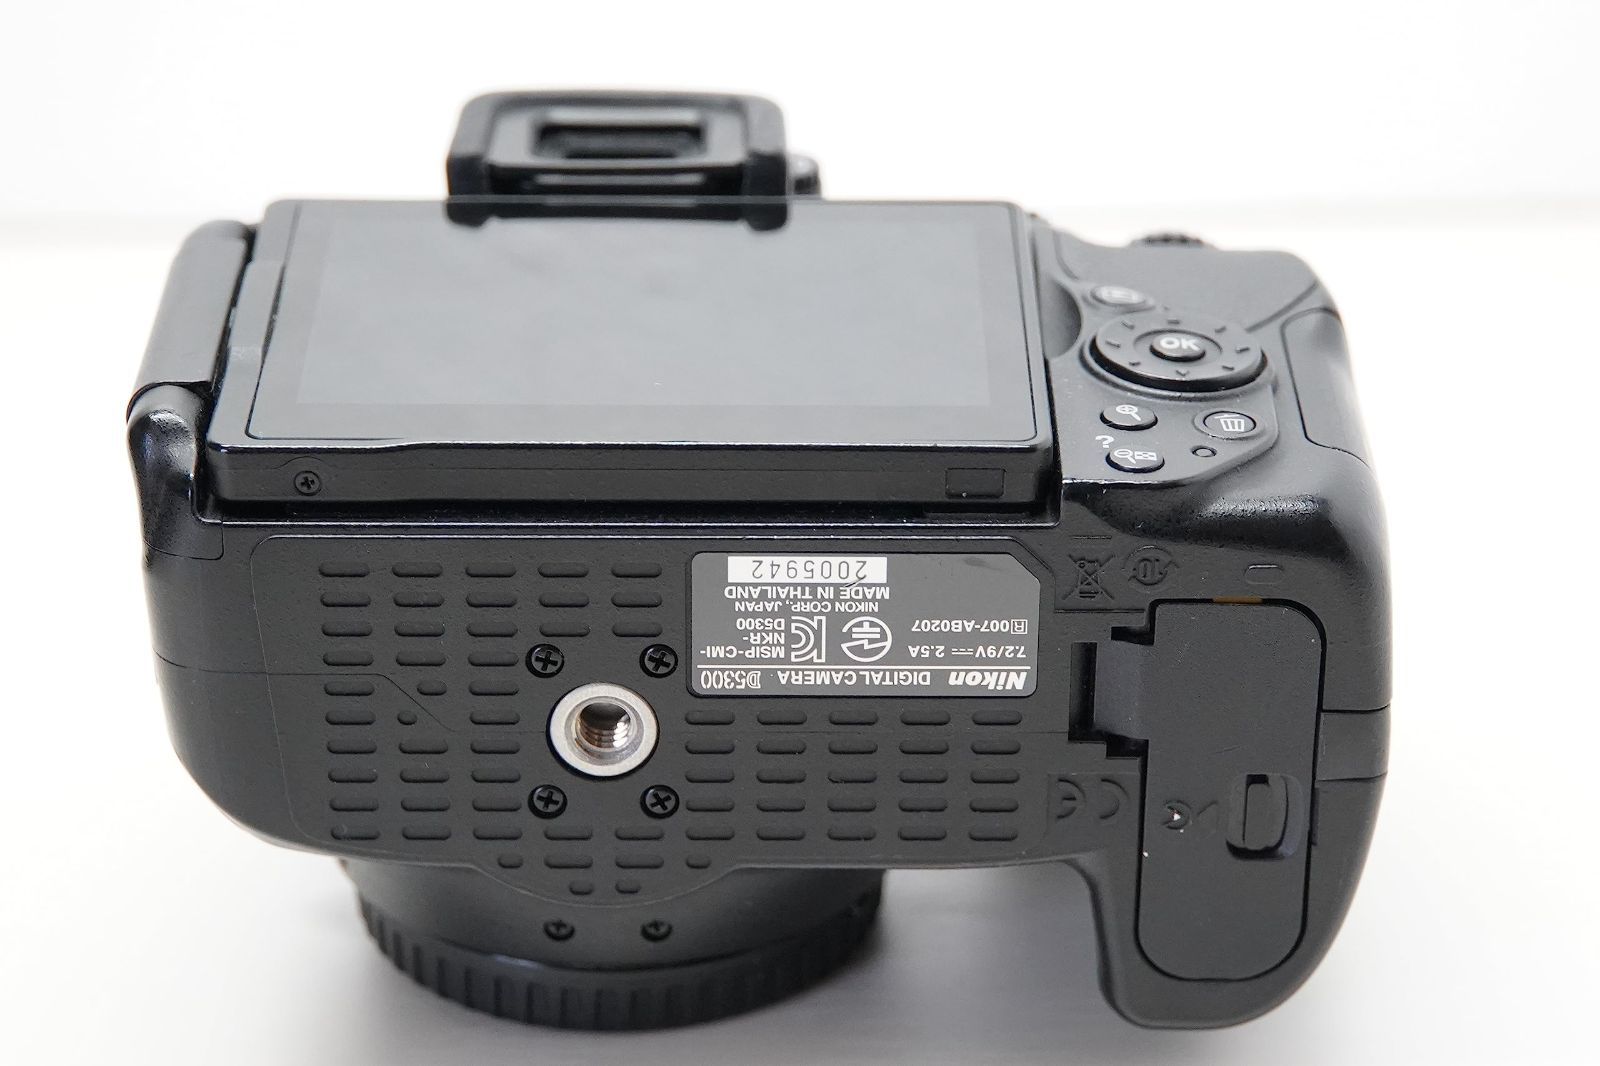 Nikon デジタル一眼レフカメラ D5300 ブラック 2400万画素 3.2型液晶 D5300BK カメラのロジネットワン メルカリ